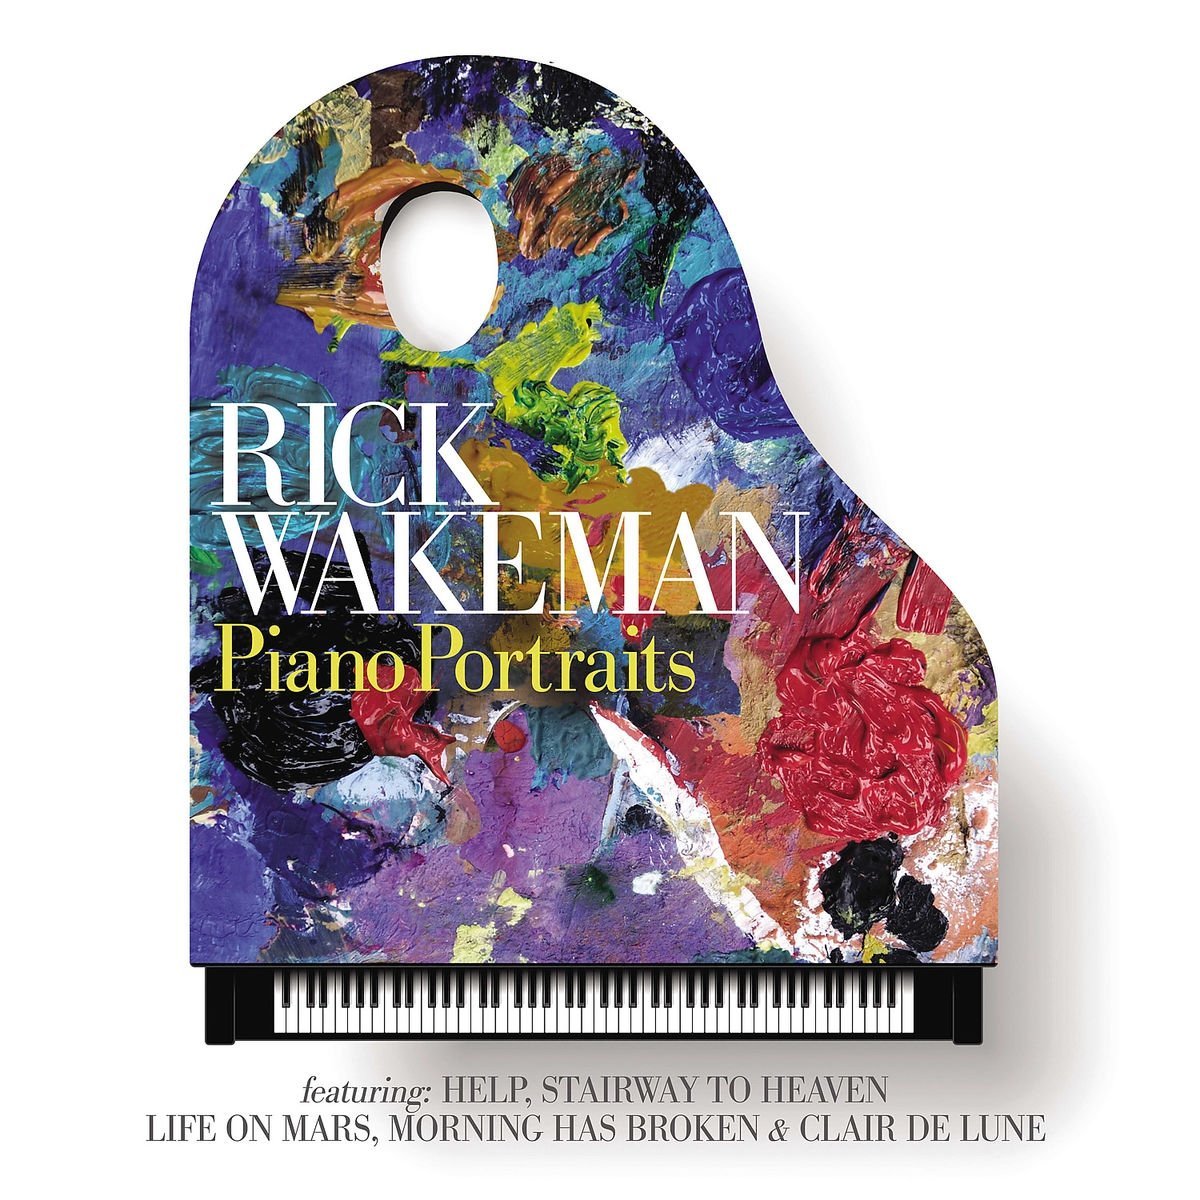 Piano Portraits – Vinyl | Rick Wakeman carturesti.ro poza noua